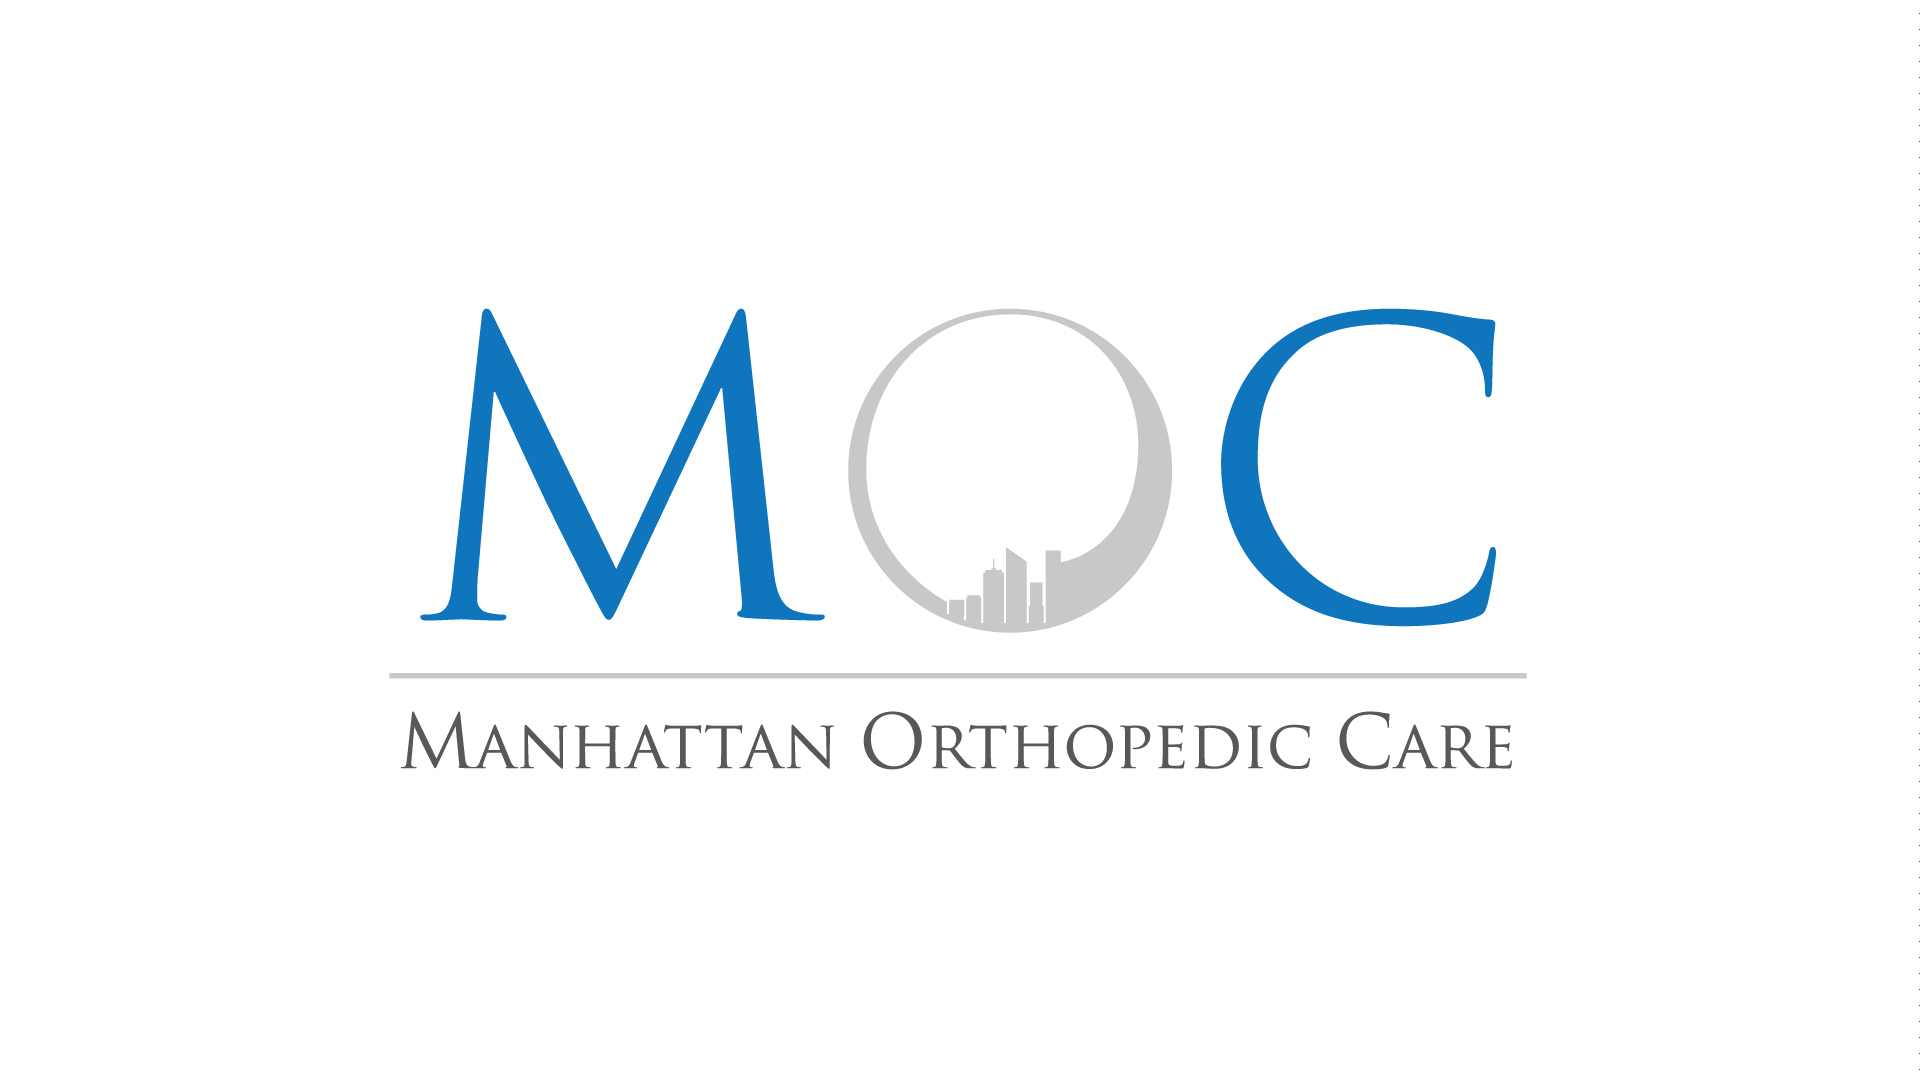 Manhattan Orthopedic Care